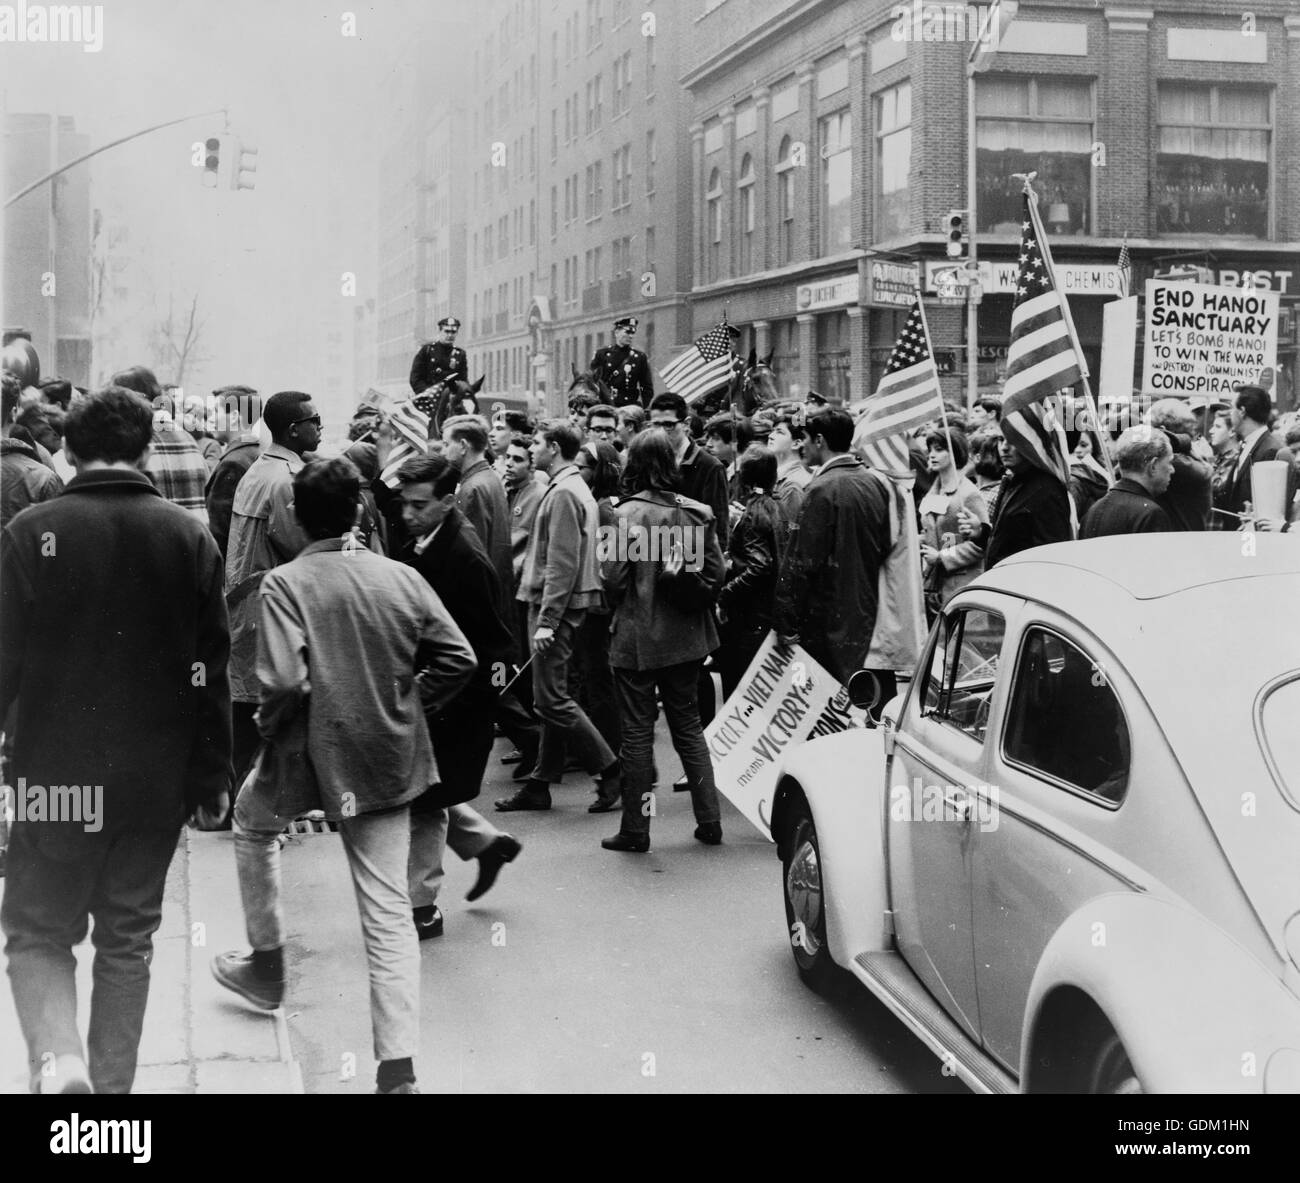 Demonstranten marschieren in einer Innenstadt mit Fahnen und Plakate zur Unterstützung des Krieges in Vietnam, Polizei auf dem Pferderücken im Hintergrund. Foto von Matthew Black. Stockfoto